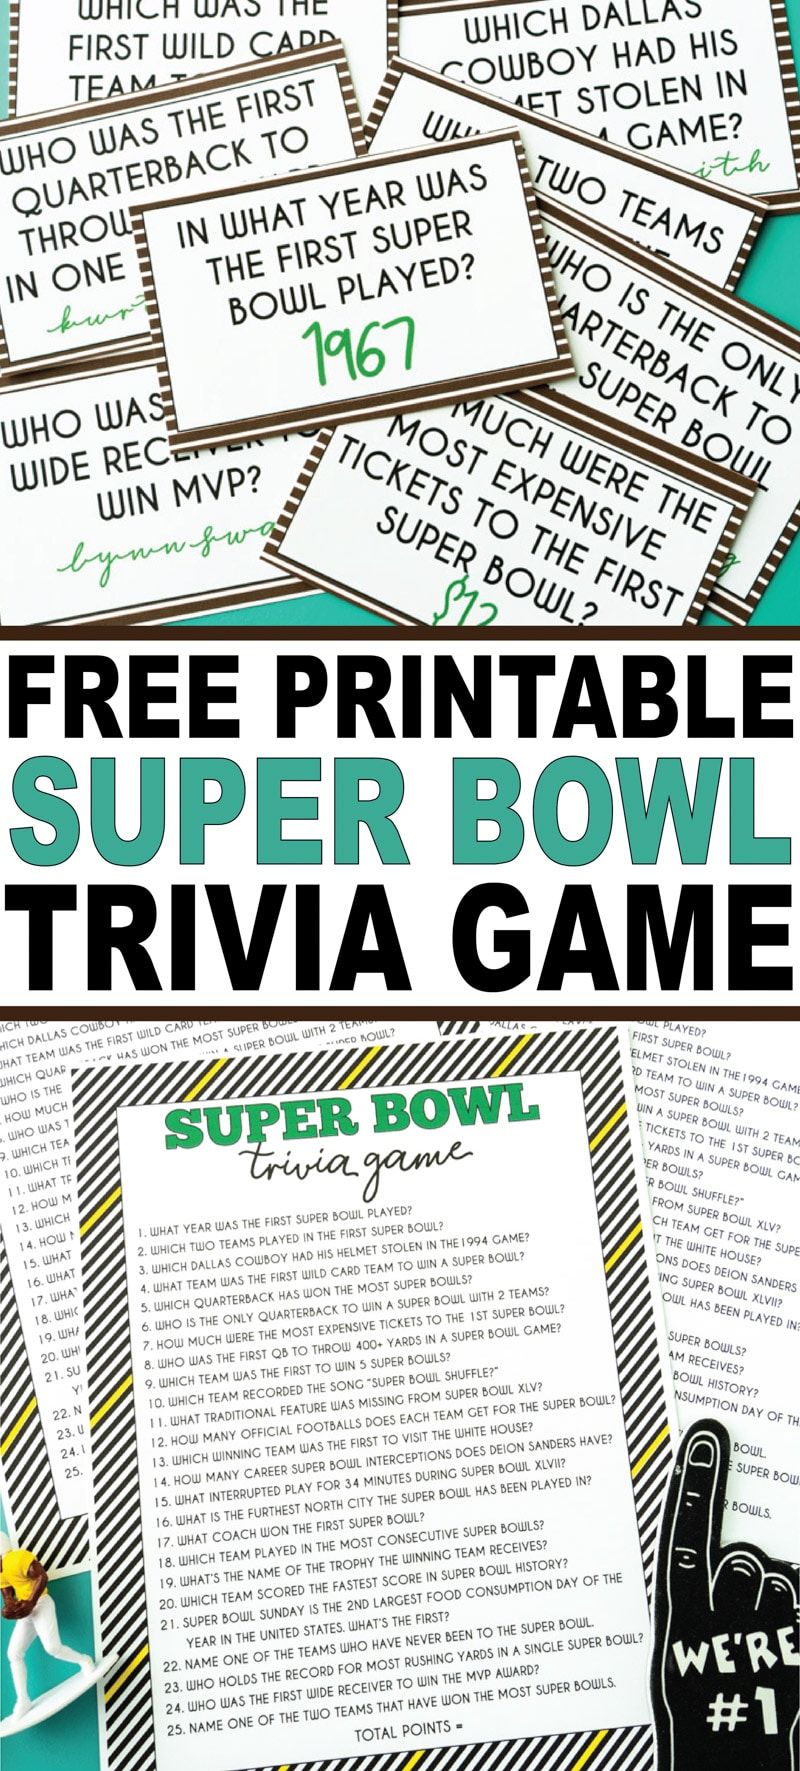 Hem yazdırılabilir bir oyun sürümü hem de oyundan önce ve sonra sorabileceğiniz yazdırılabilir kartlarla eğlenceli bir Super Bowl bilgi oyunu! Gelmiş geçmiş en iyi Super Bowl parti oyunlarından biri!